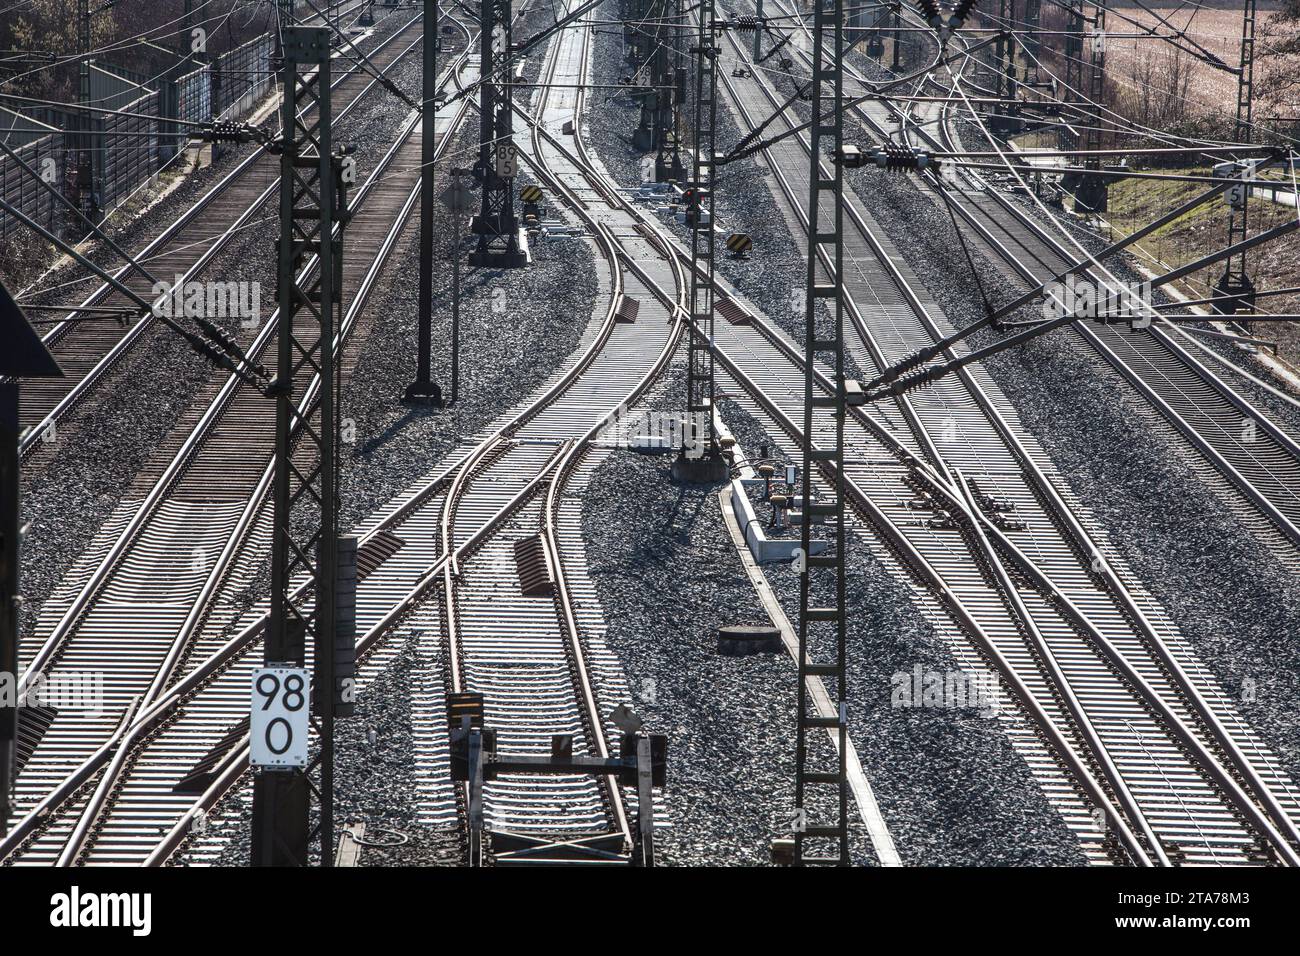 La ferrovia ad alta velocità Hannover-Würzburg, Nörten-Hardenberg, distretto di Northeim, bassa Sassonia, Germania, Europa Foto Stock